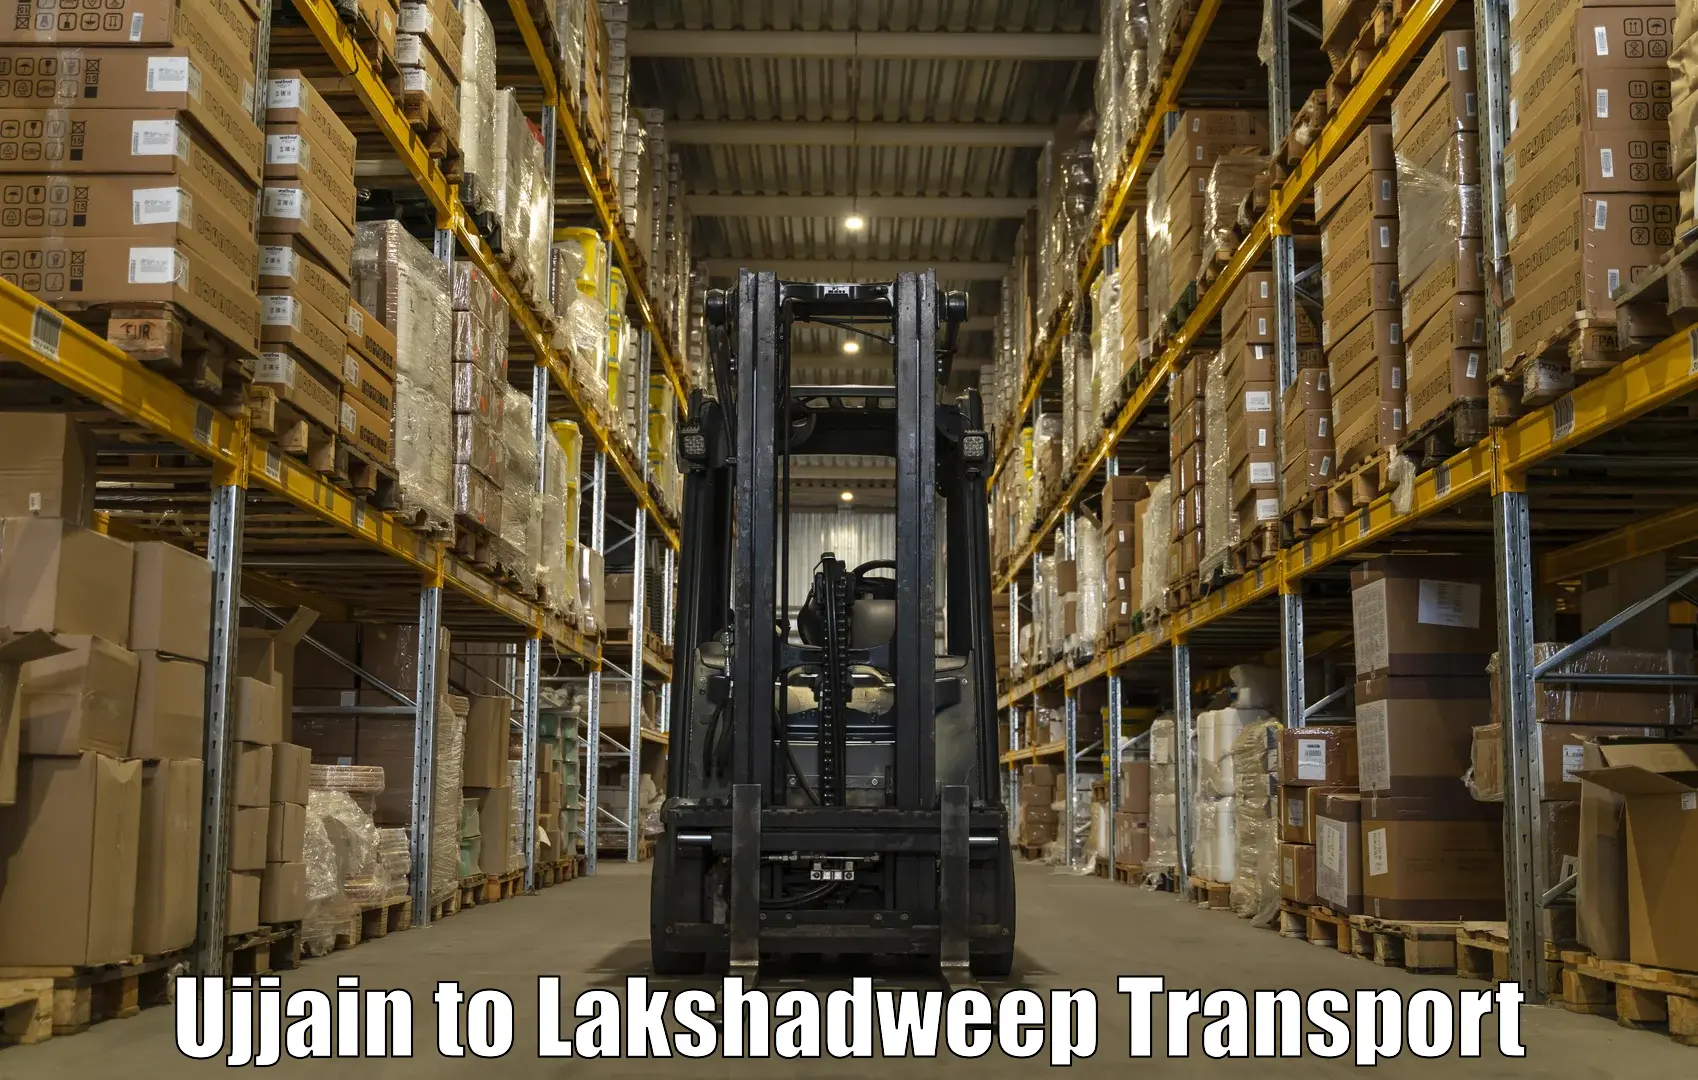 Cycle transportation service Ujjain to Lakshadweep